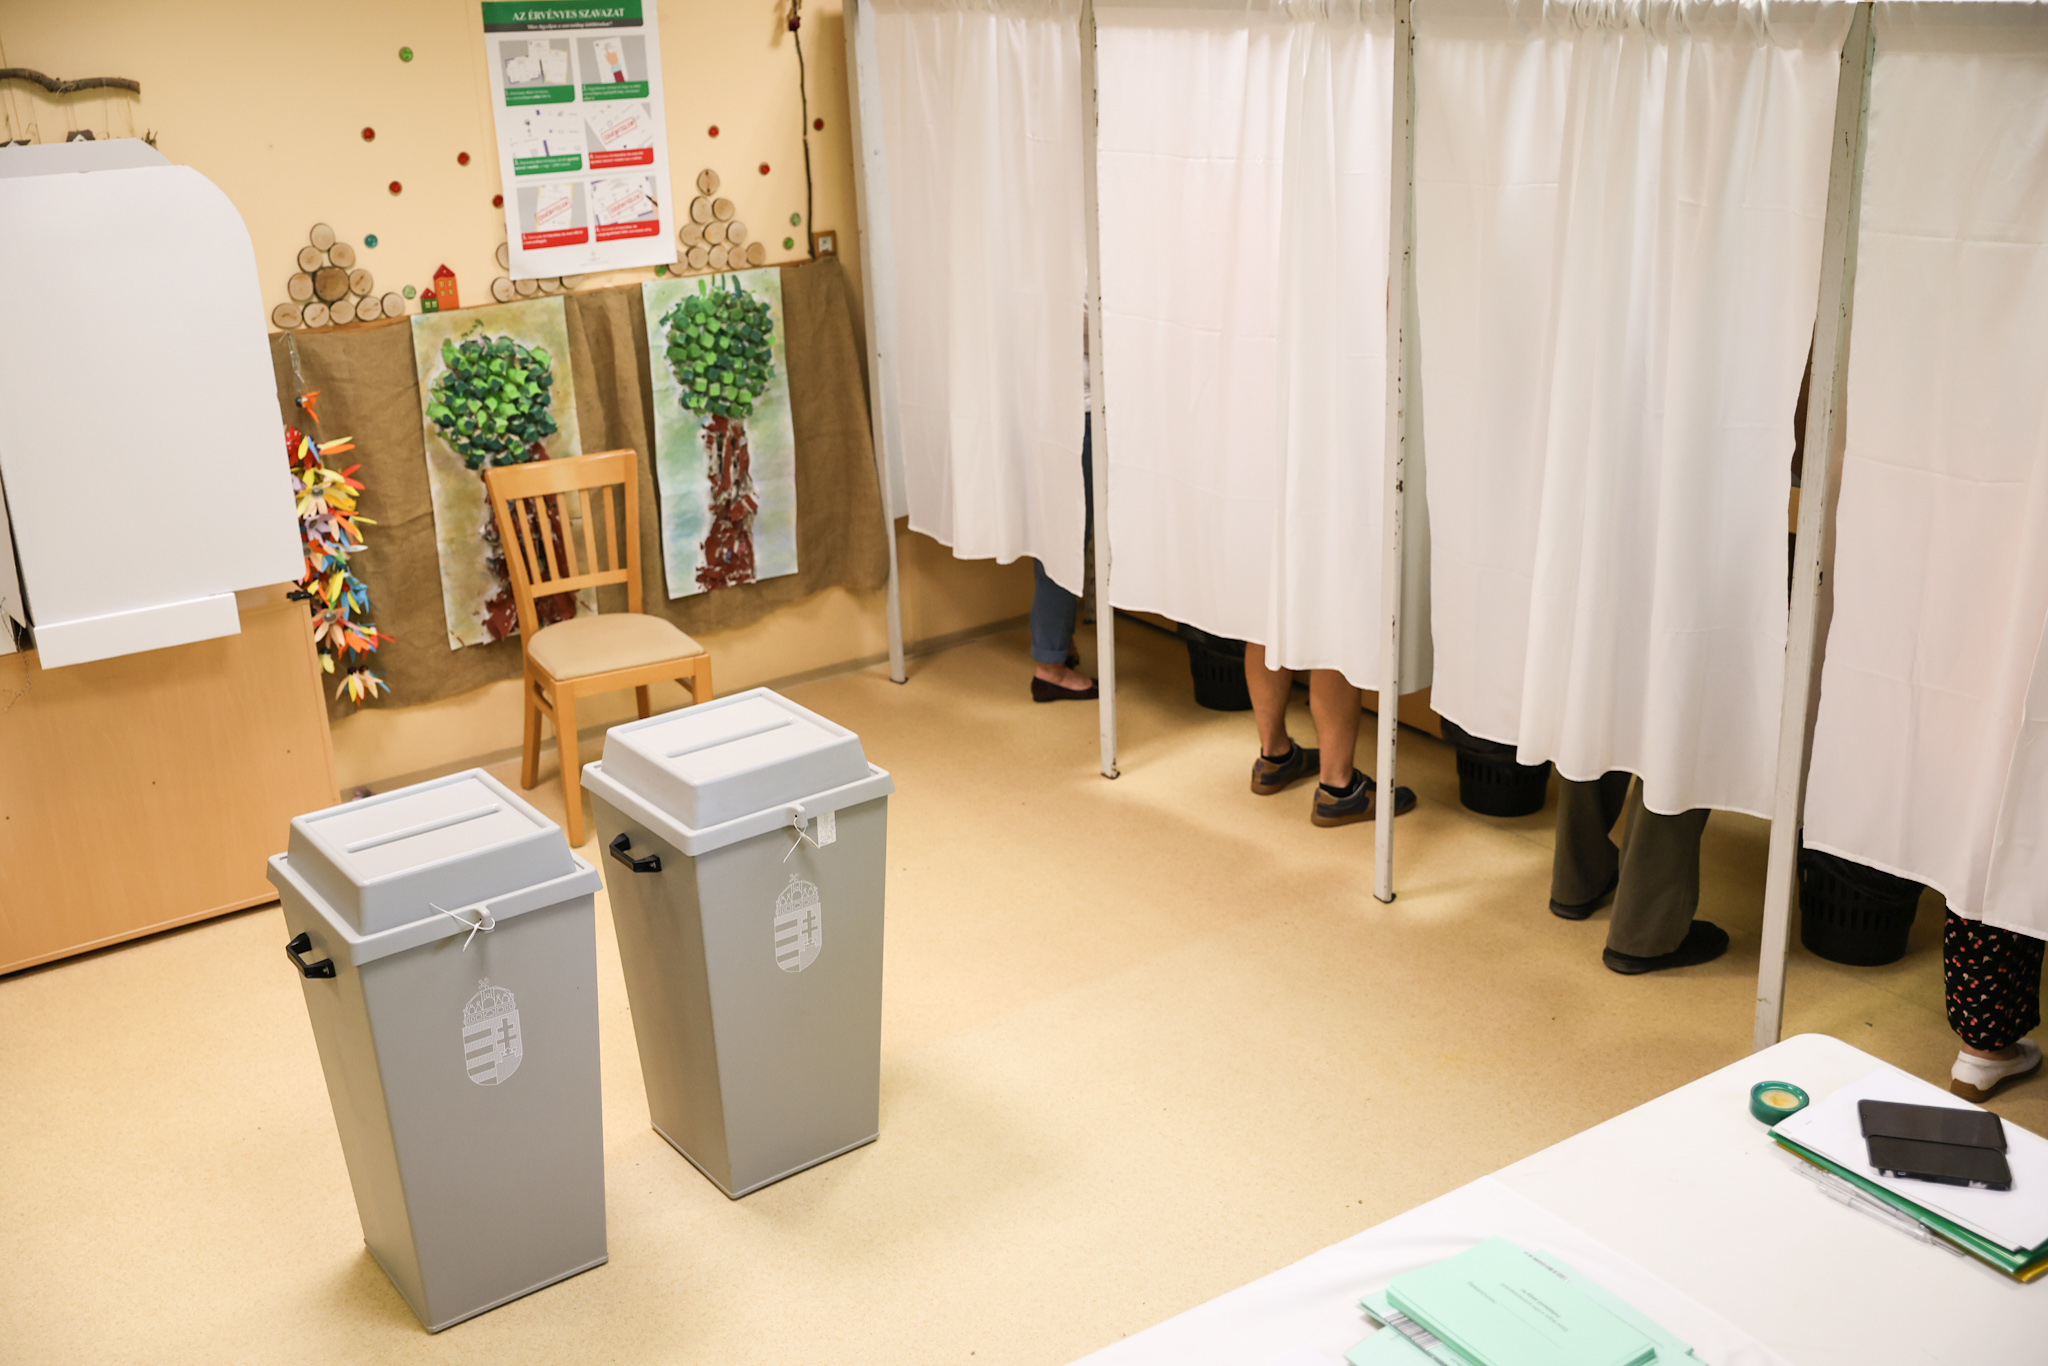 IDEA: Már kevesebb mint 10 százalékpont választja el a Fideszt és a Tisza Pártot